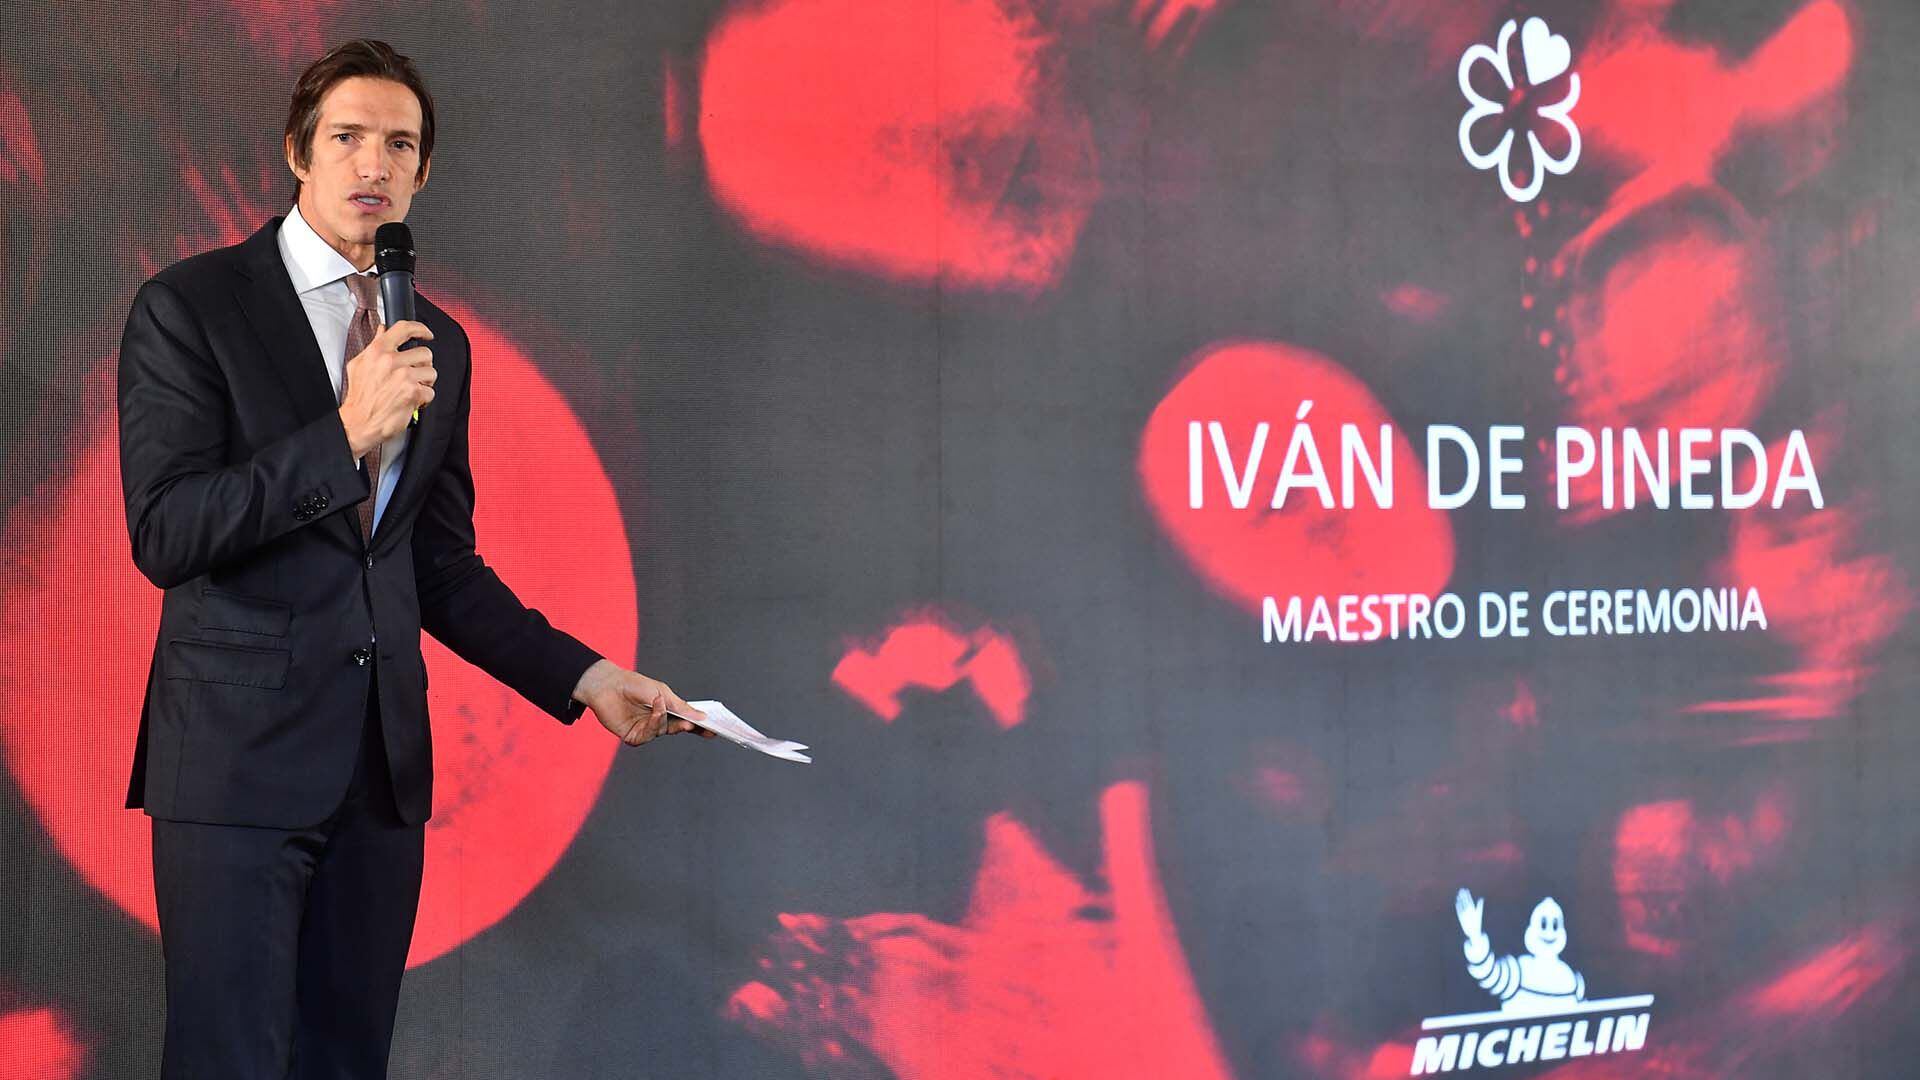 Iván de Pineda fue el maestro de ceremonia de la presentación de la Guía Michelin en Argentina, que tuvo mucha concurrencia en el hotel Four Seasons de la Ciudad de Buenos Aires (Maximiliano Luna)